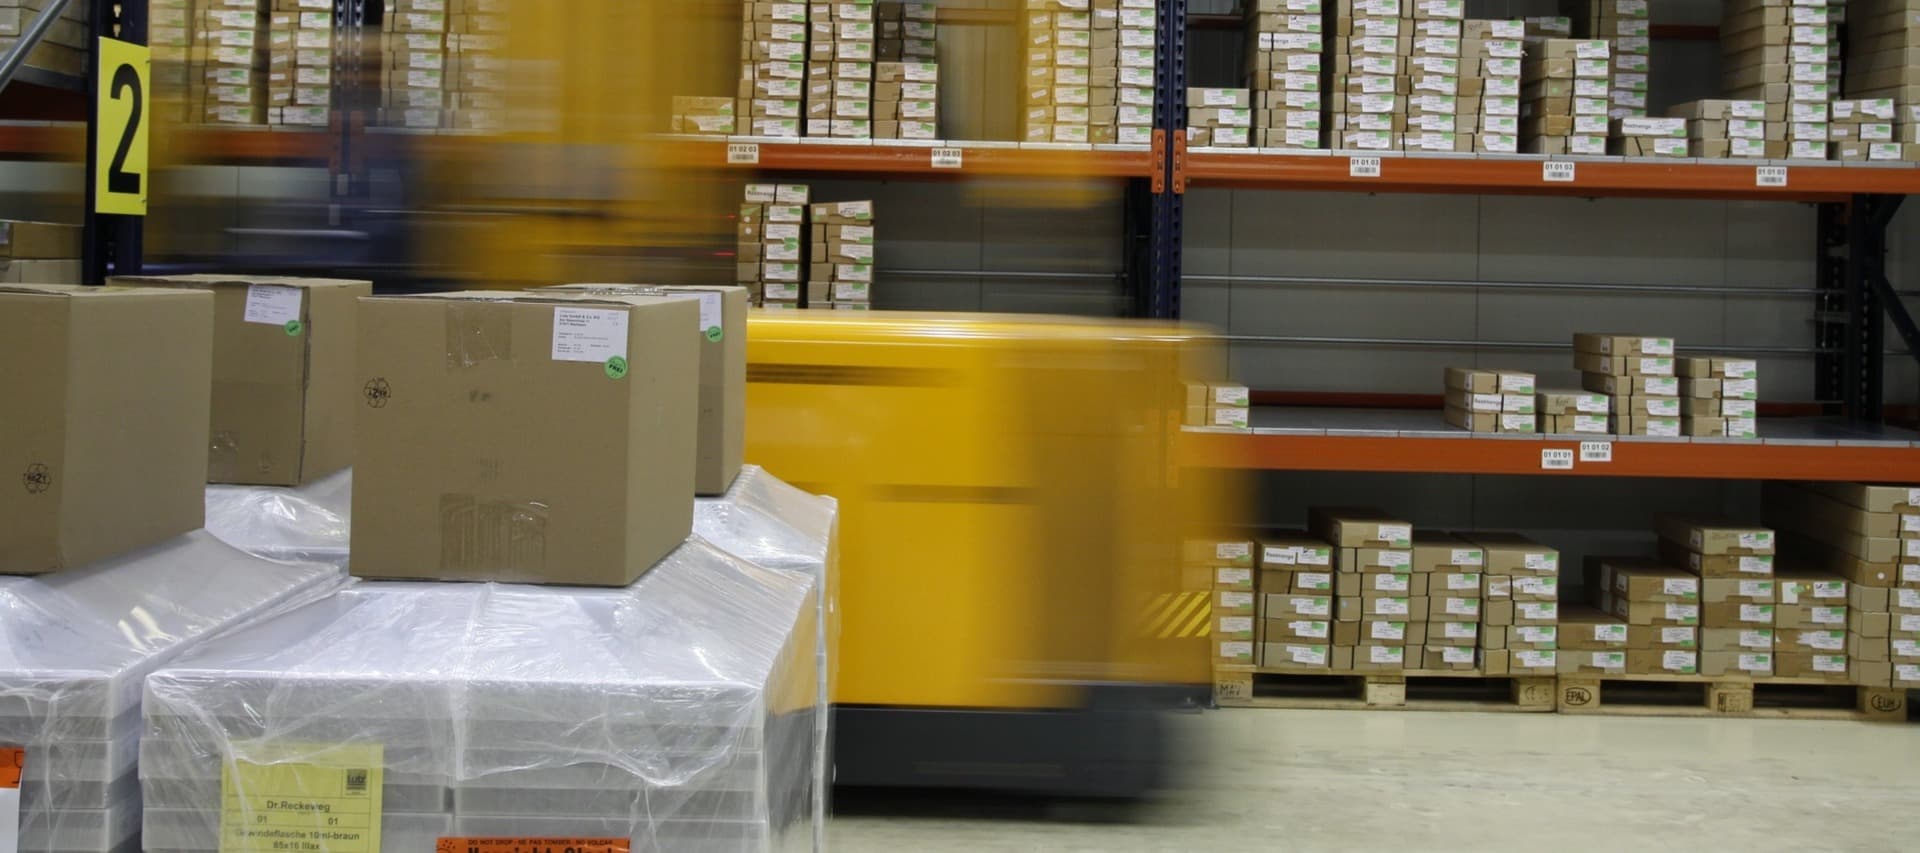 Фото новости: "Amazon может исчерпать возможности найма персонала на склады к 2024 г."